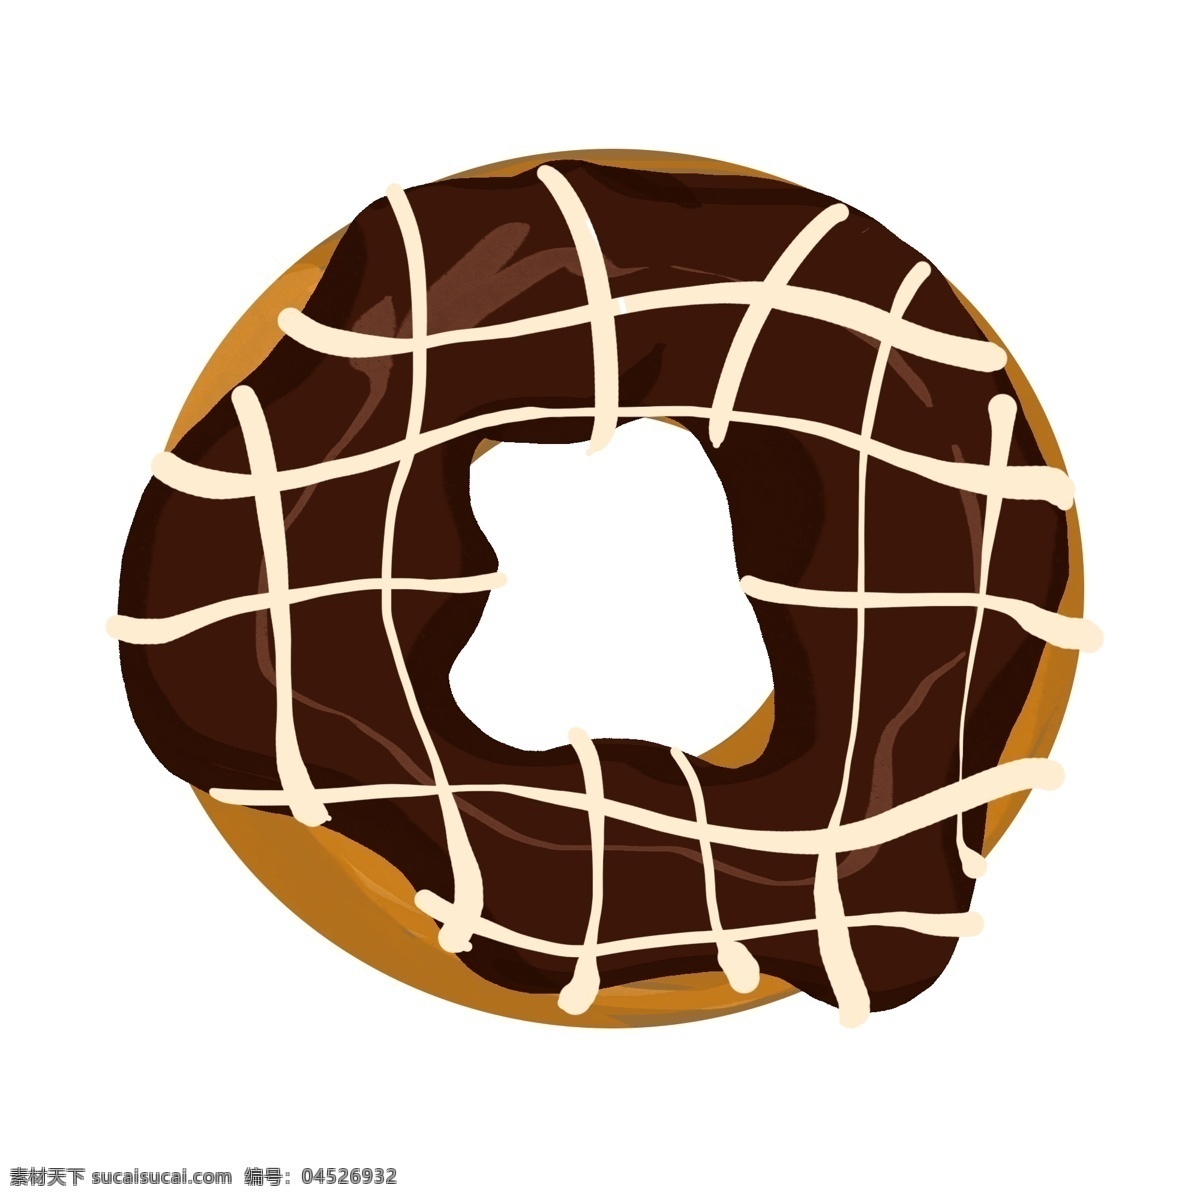 手绘 巧克力 甜甜 圈 插画 巧克力甜甜圈 手绘甜甜圈 圆形甜甜圈 美味甜品 卡通甜甜圈 甜甜圈插画